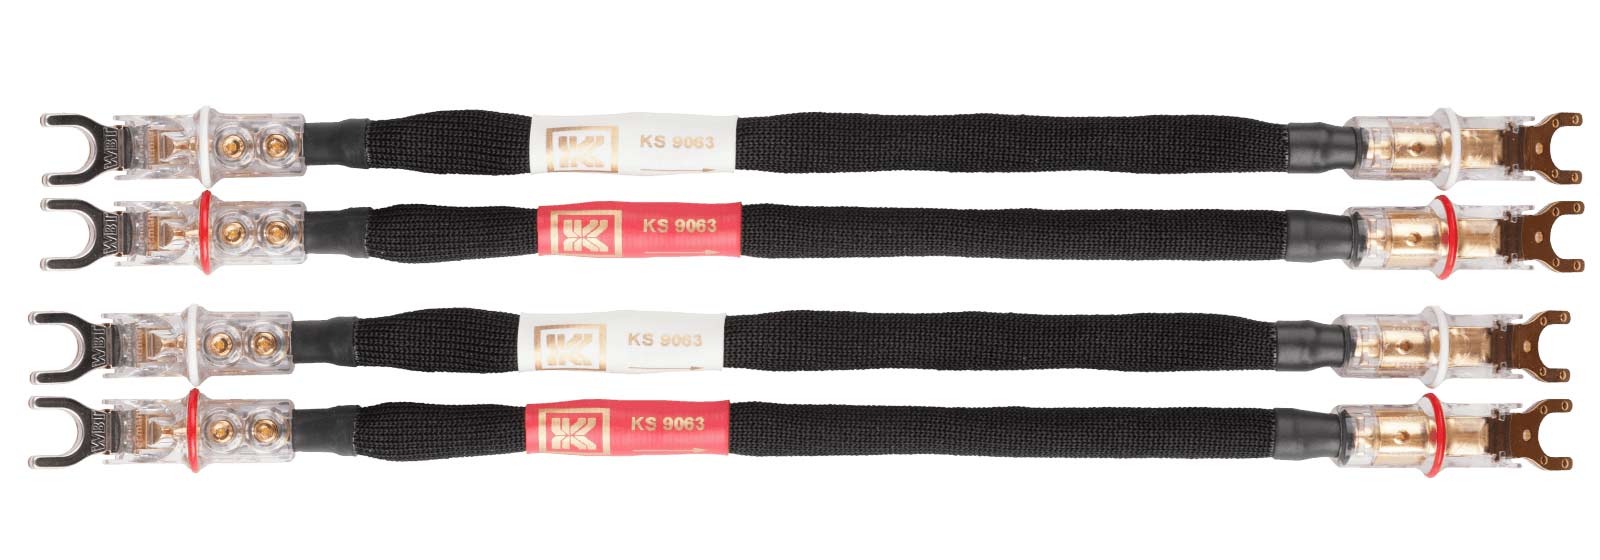 Kimber-KS9063-jumper-cables